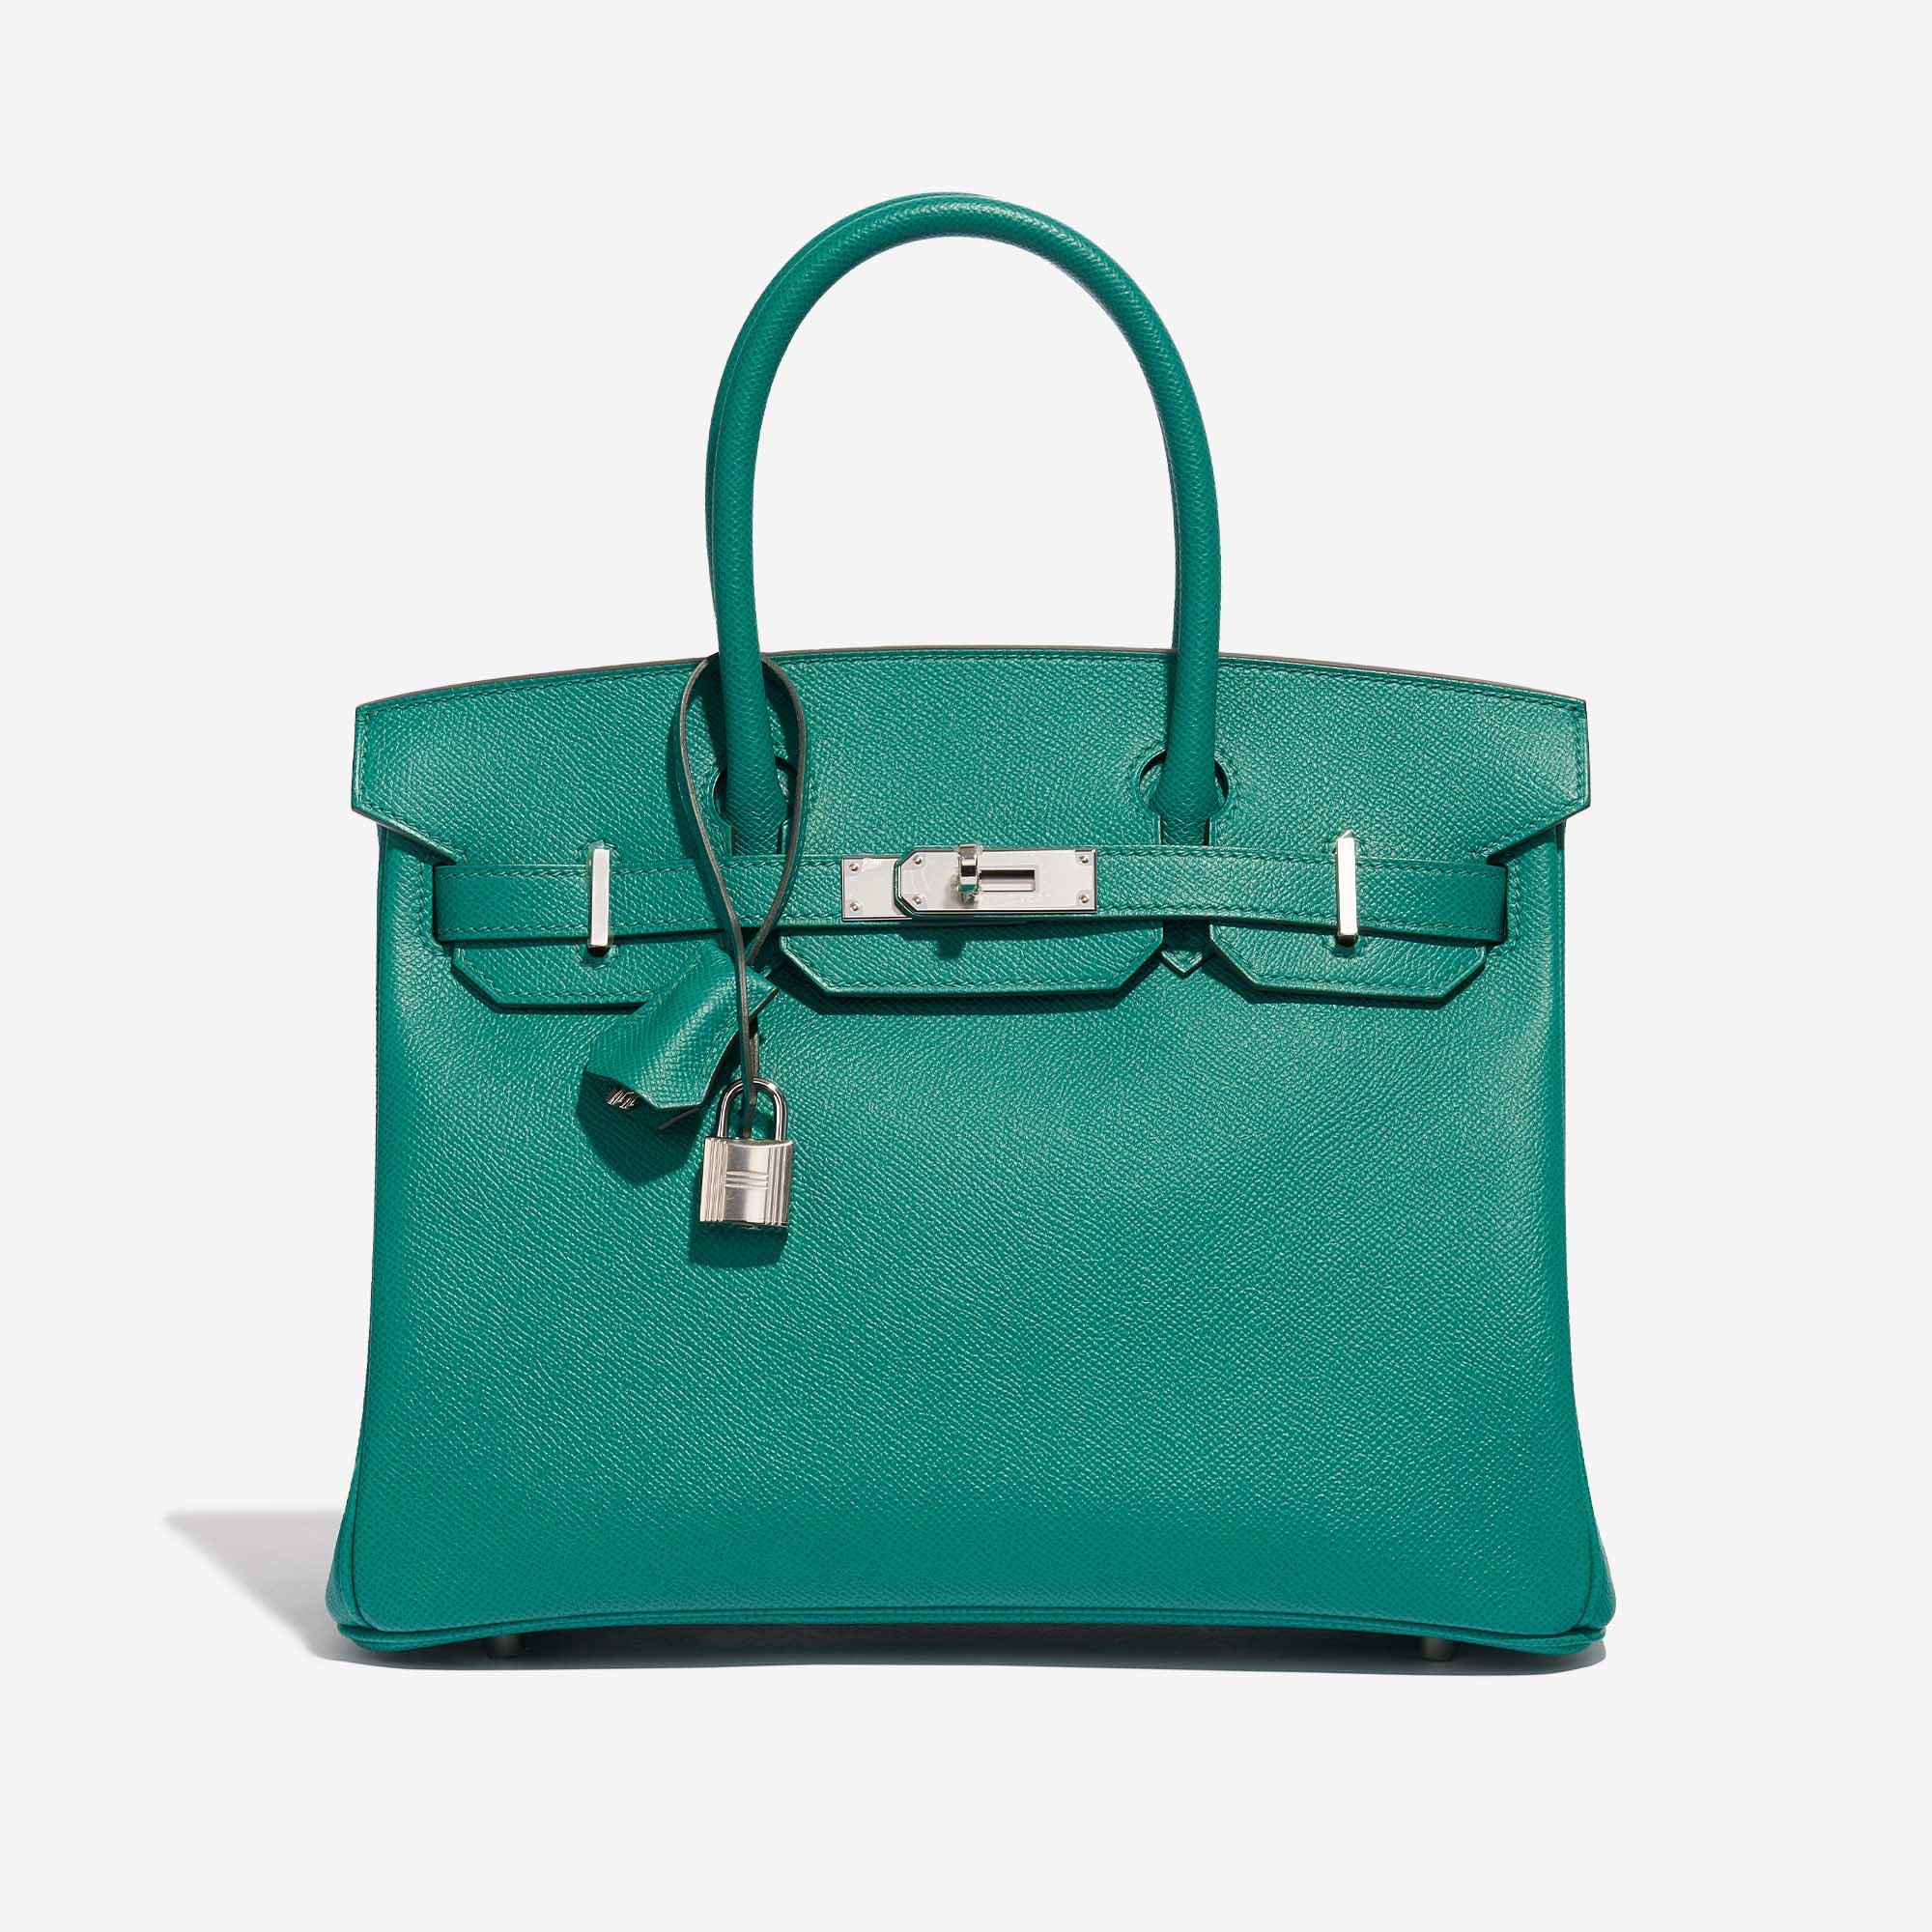 Pre-owned Hermès Tasche Birkin 30 Epsom Vert Jade Green Front | Verkaufen Sie Ihre Designer-Tasche auf Saclab.com